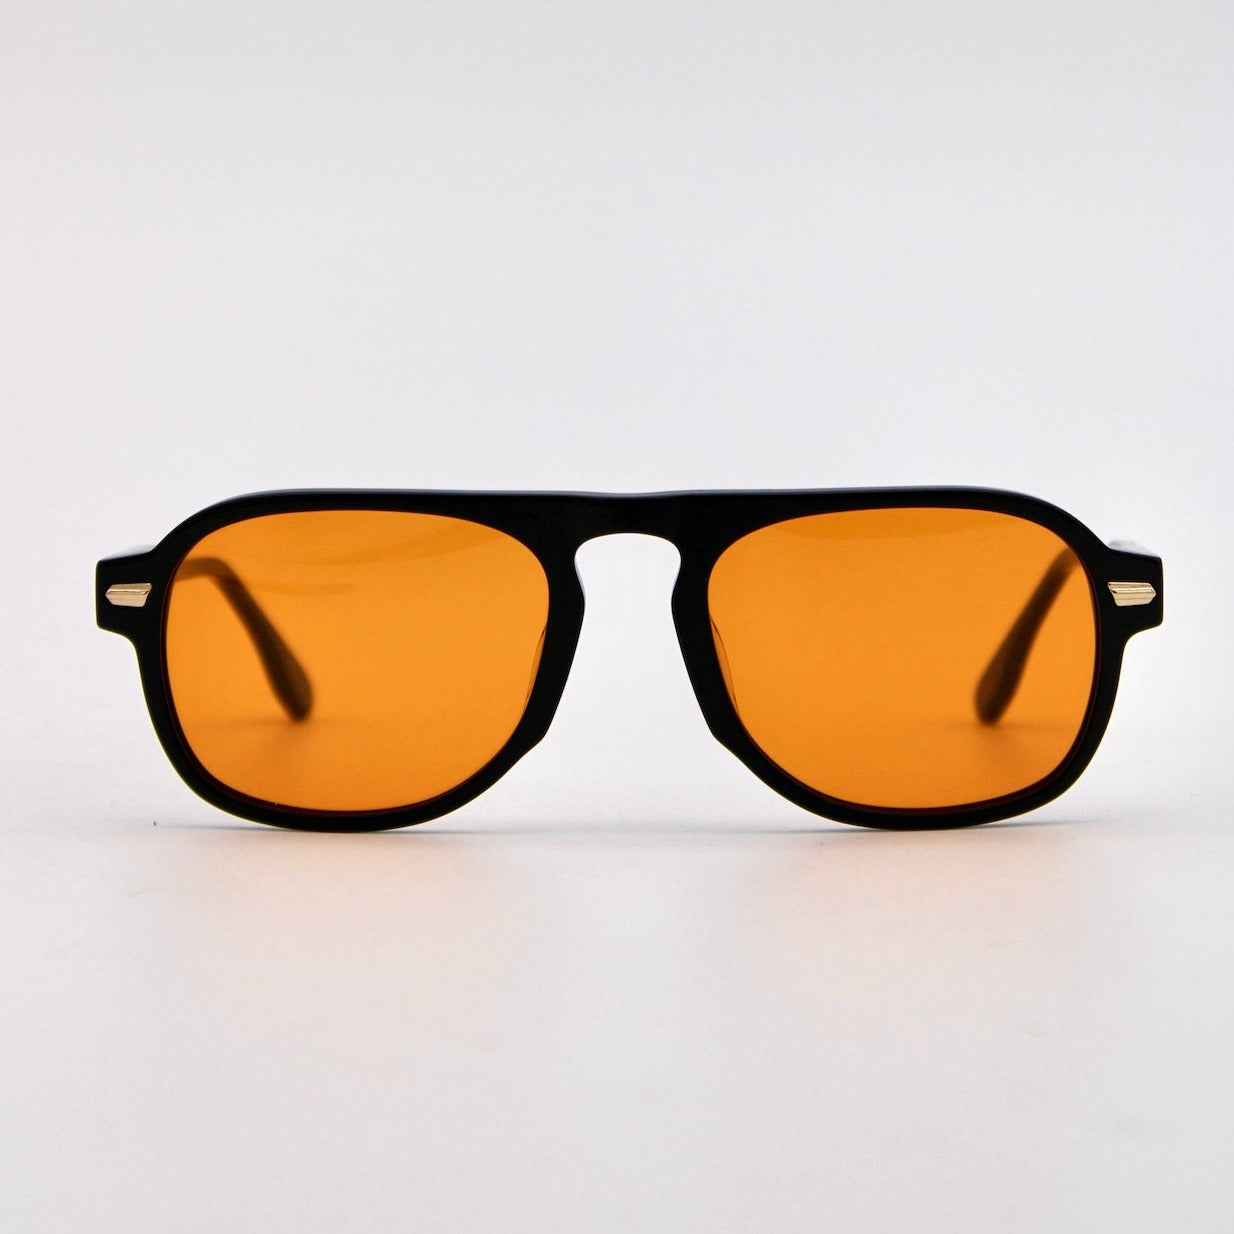 346 Originals Black Frame with Unique Orange Lenses